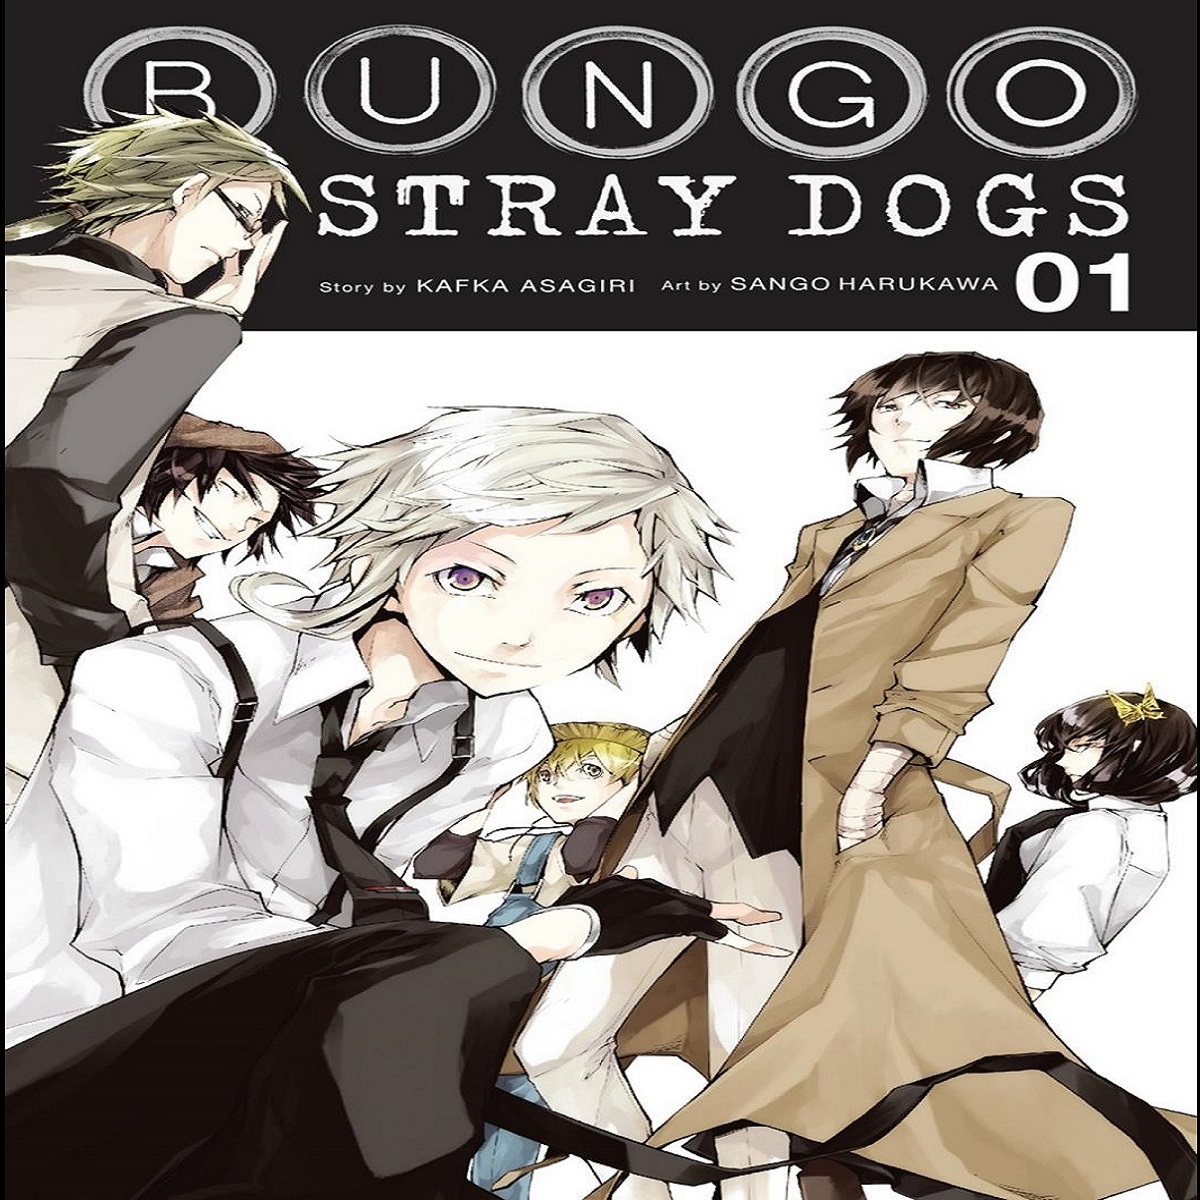 مجله Bungo Stray Dogs 1 دسامبر 2016